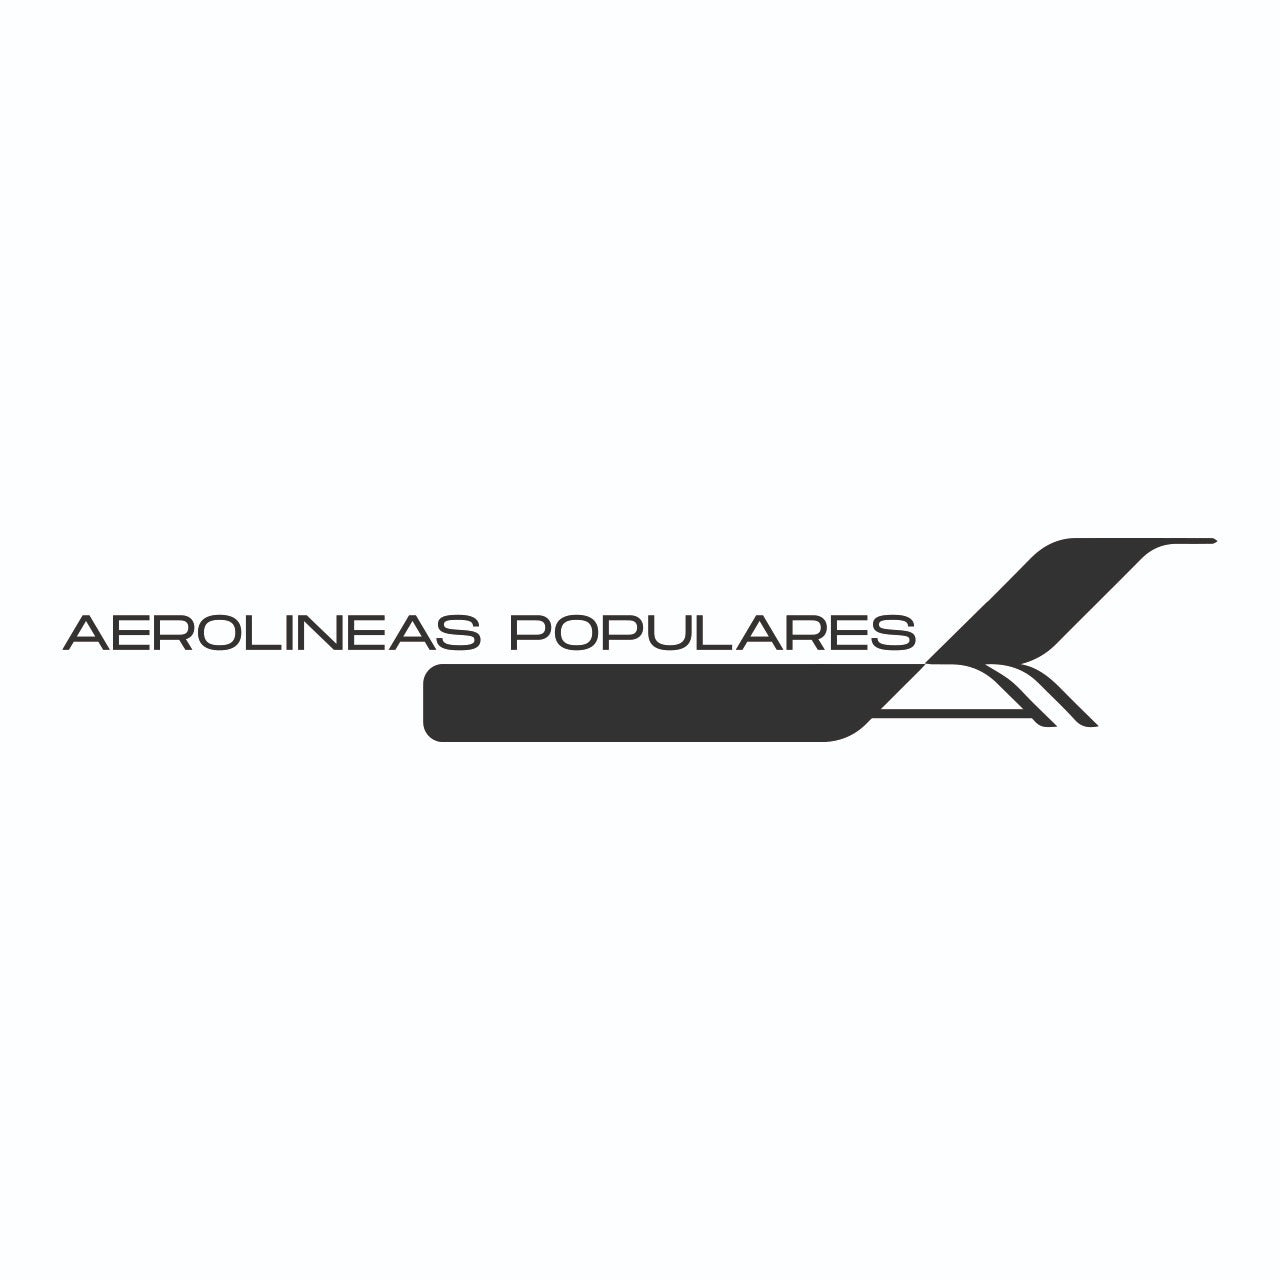 Aerolíneas Populares